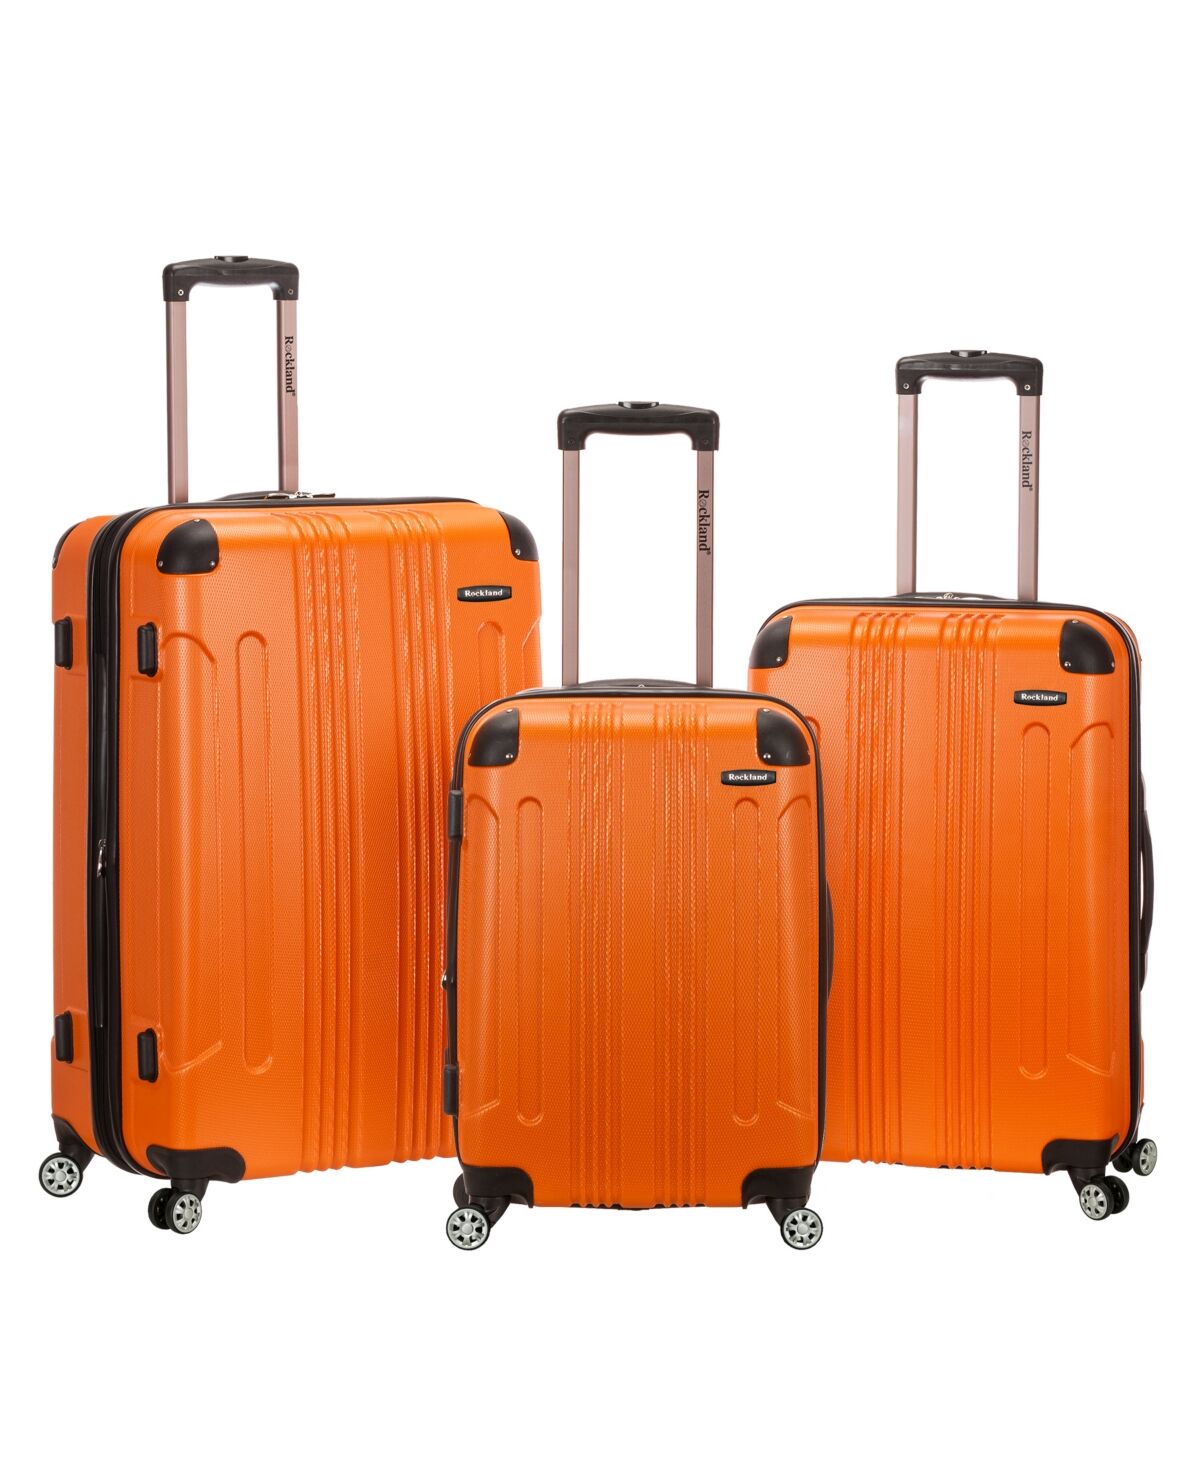 Rockland Sonic 3-Pc. Hardside Luggage Set - Orange